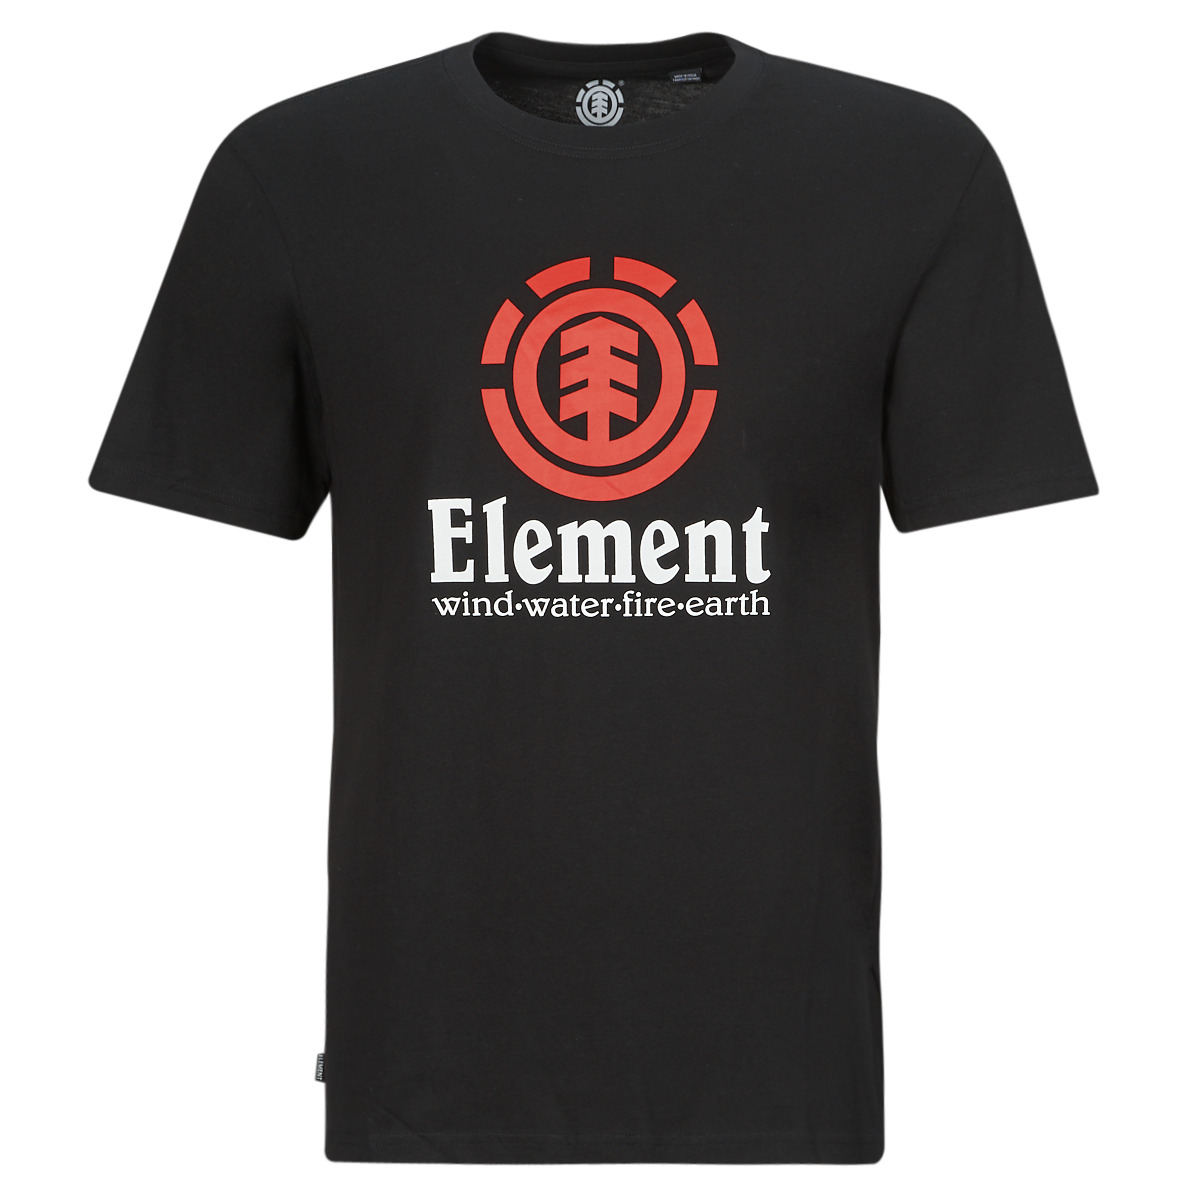 Abbigliamento Uomo T-shirt maniche corte Element VERTICAL SS Nero